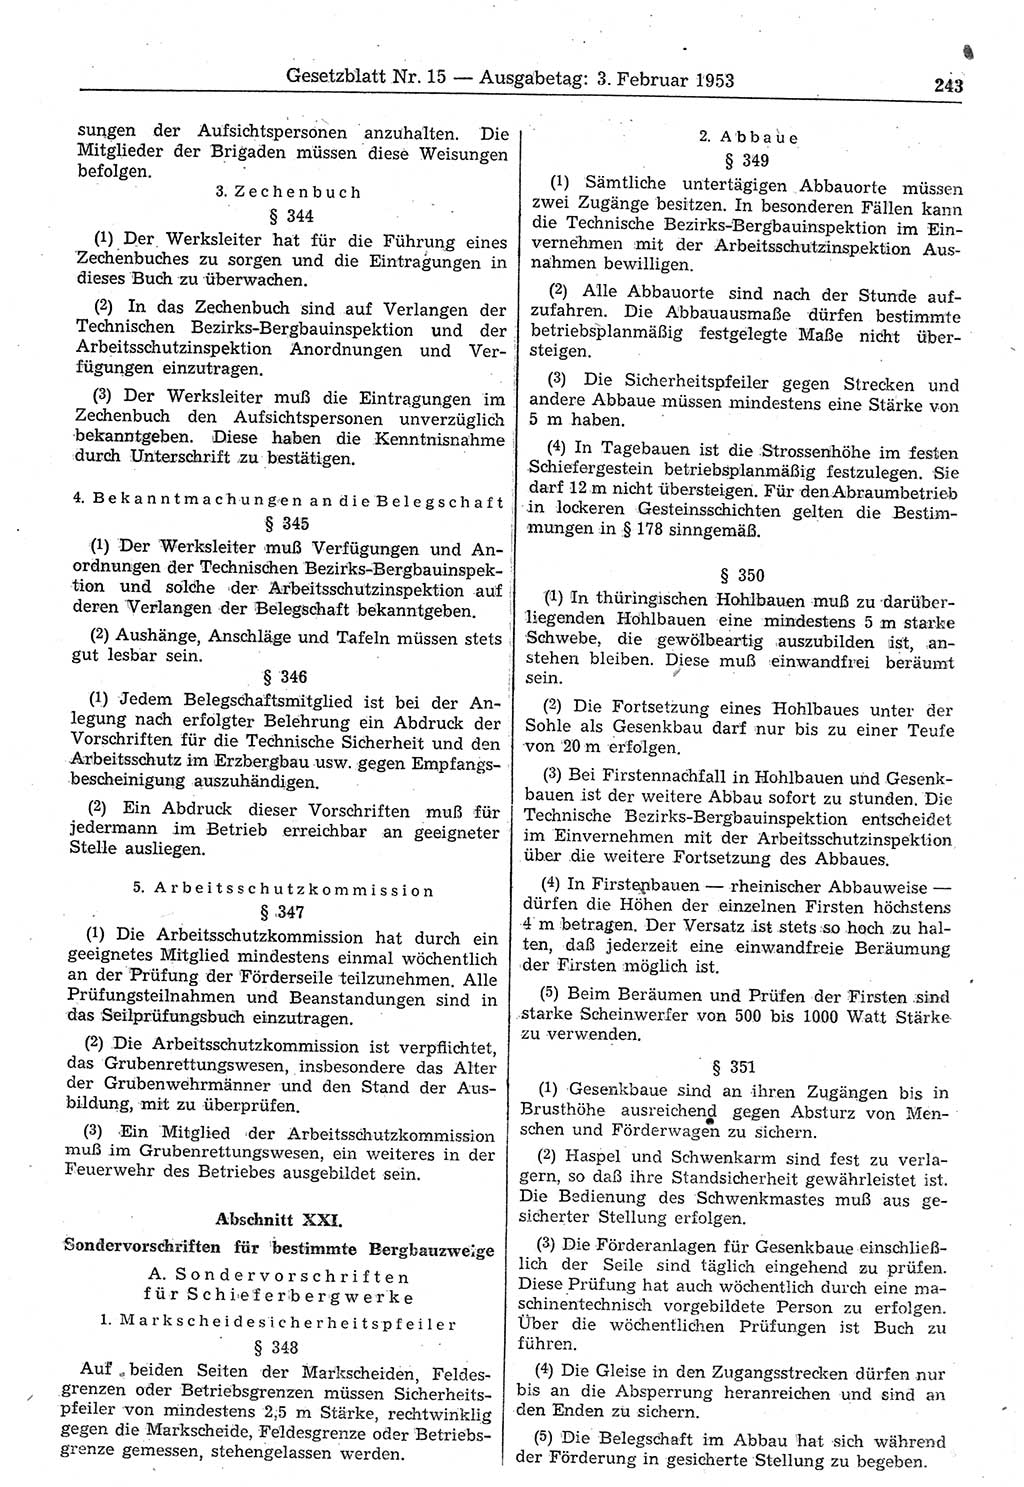 Gesetzblatt (GBl.) der Deutschen Demokratischen Republik (DDR) 1953, Seite 243 (GBl. DDR 1953, S. 243)